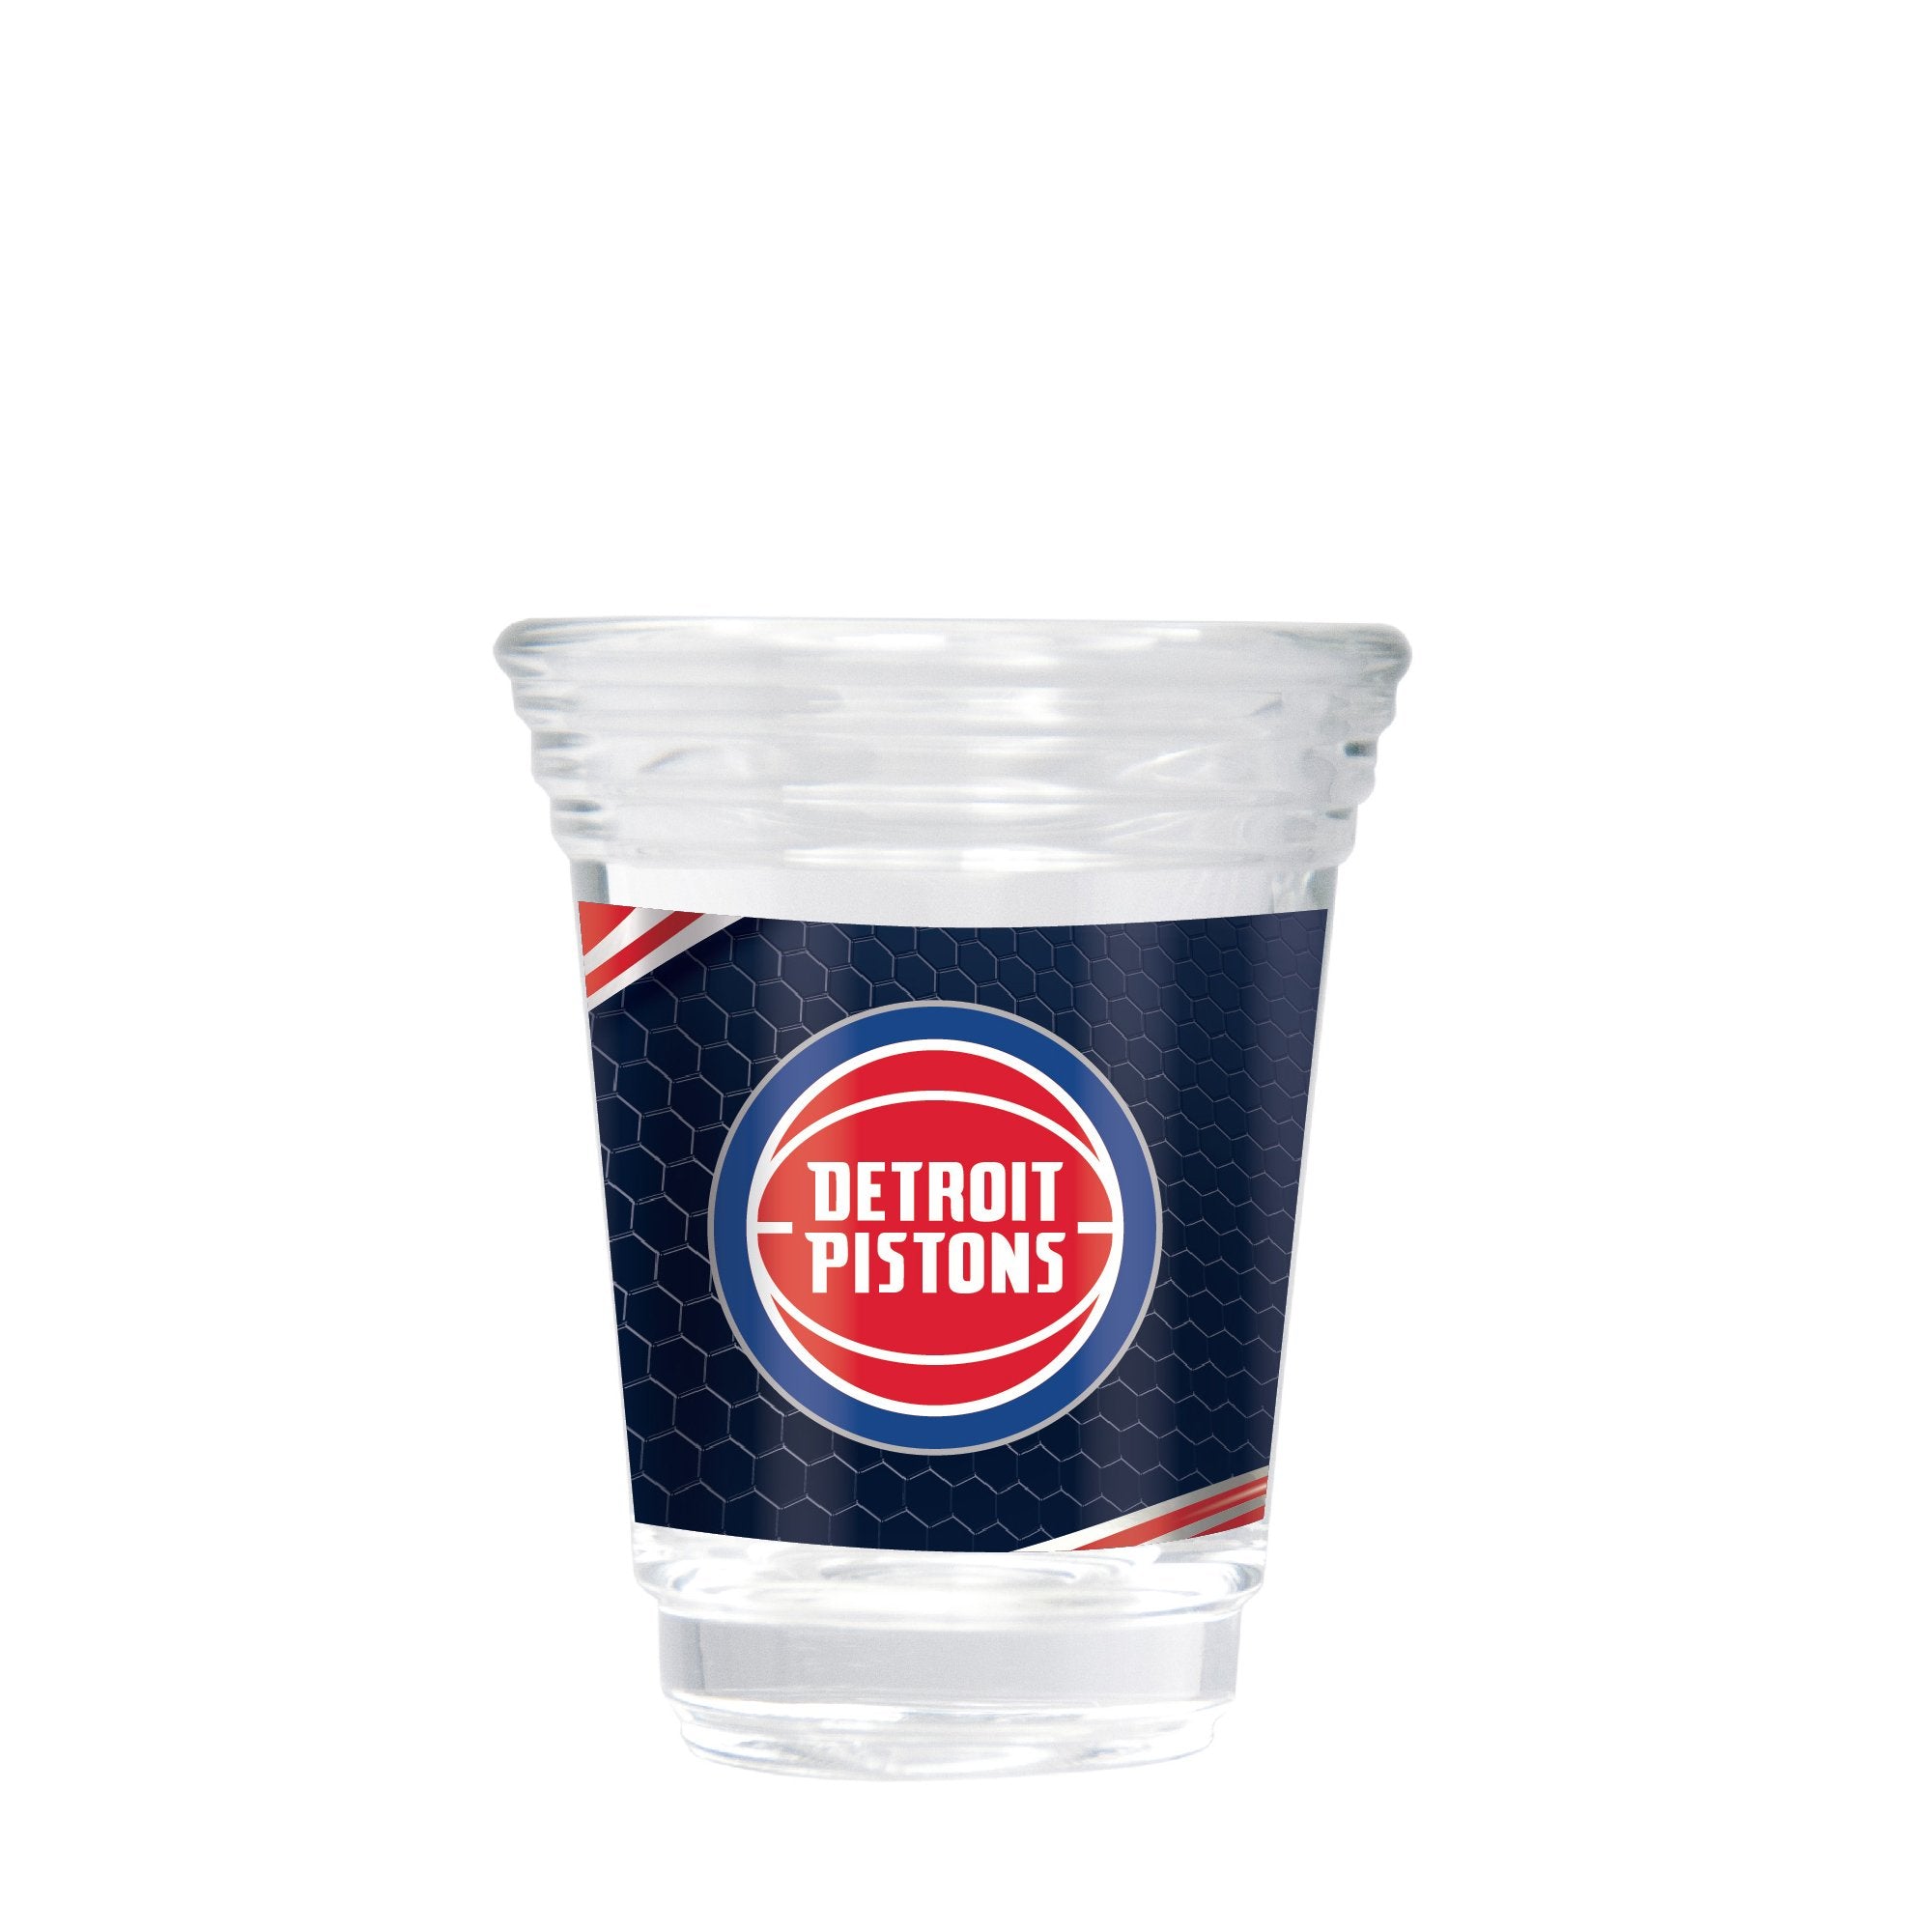 Detroit Pistons 2 oz. Round Shot Glass